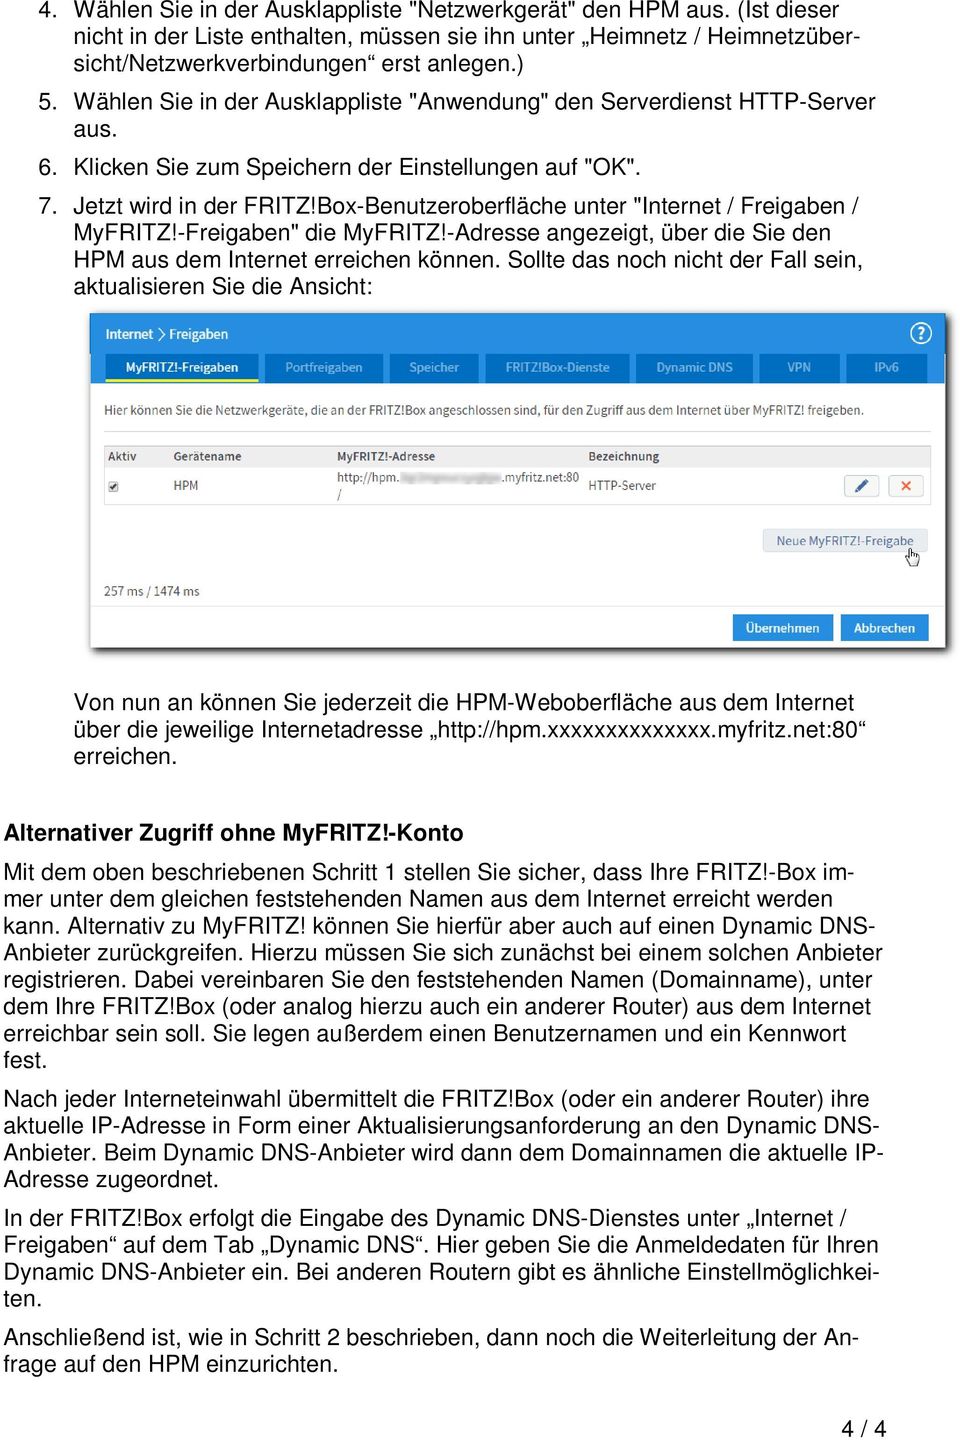 Box-Benutzeroberfläche unter "Internet / Freigaben / MyFRITZ!-Freigaben" die MyFRITZ!-Adresse angezeigt, über die Sie den HPM aus dem Internet erreichen können.